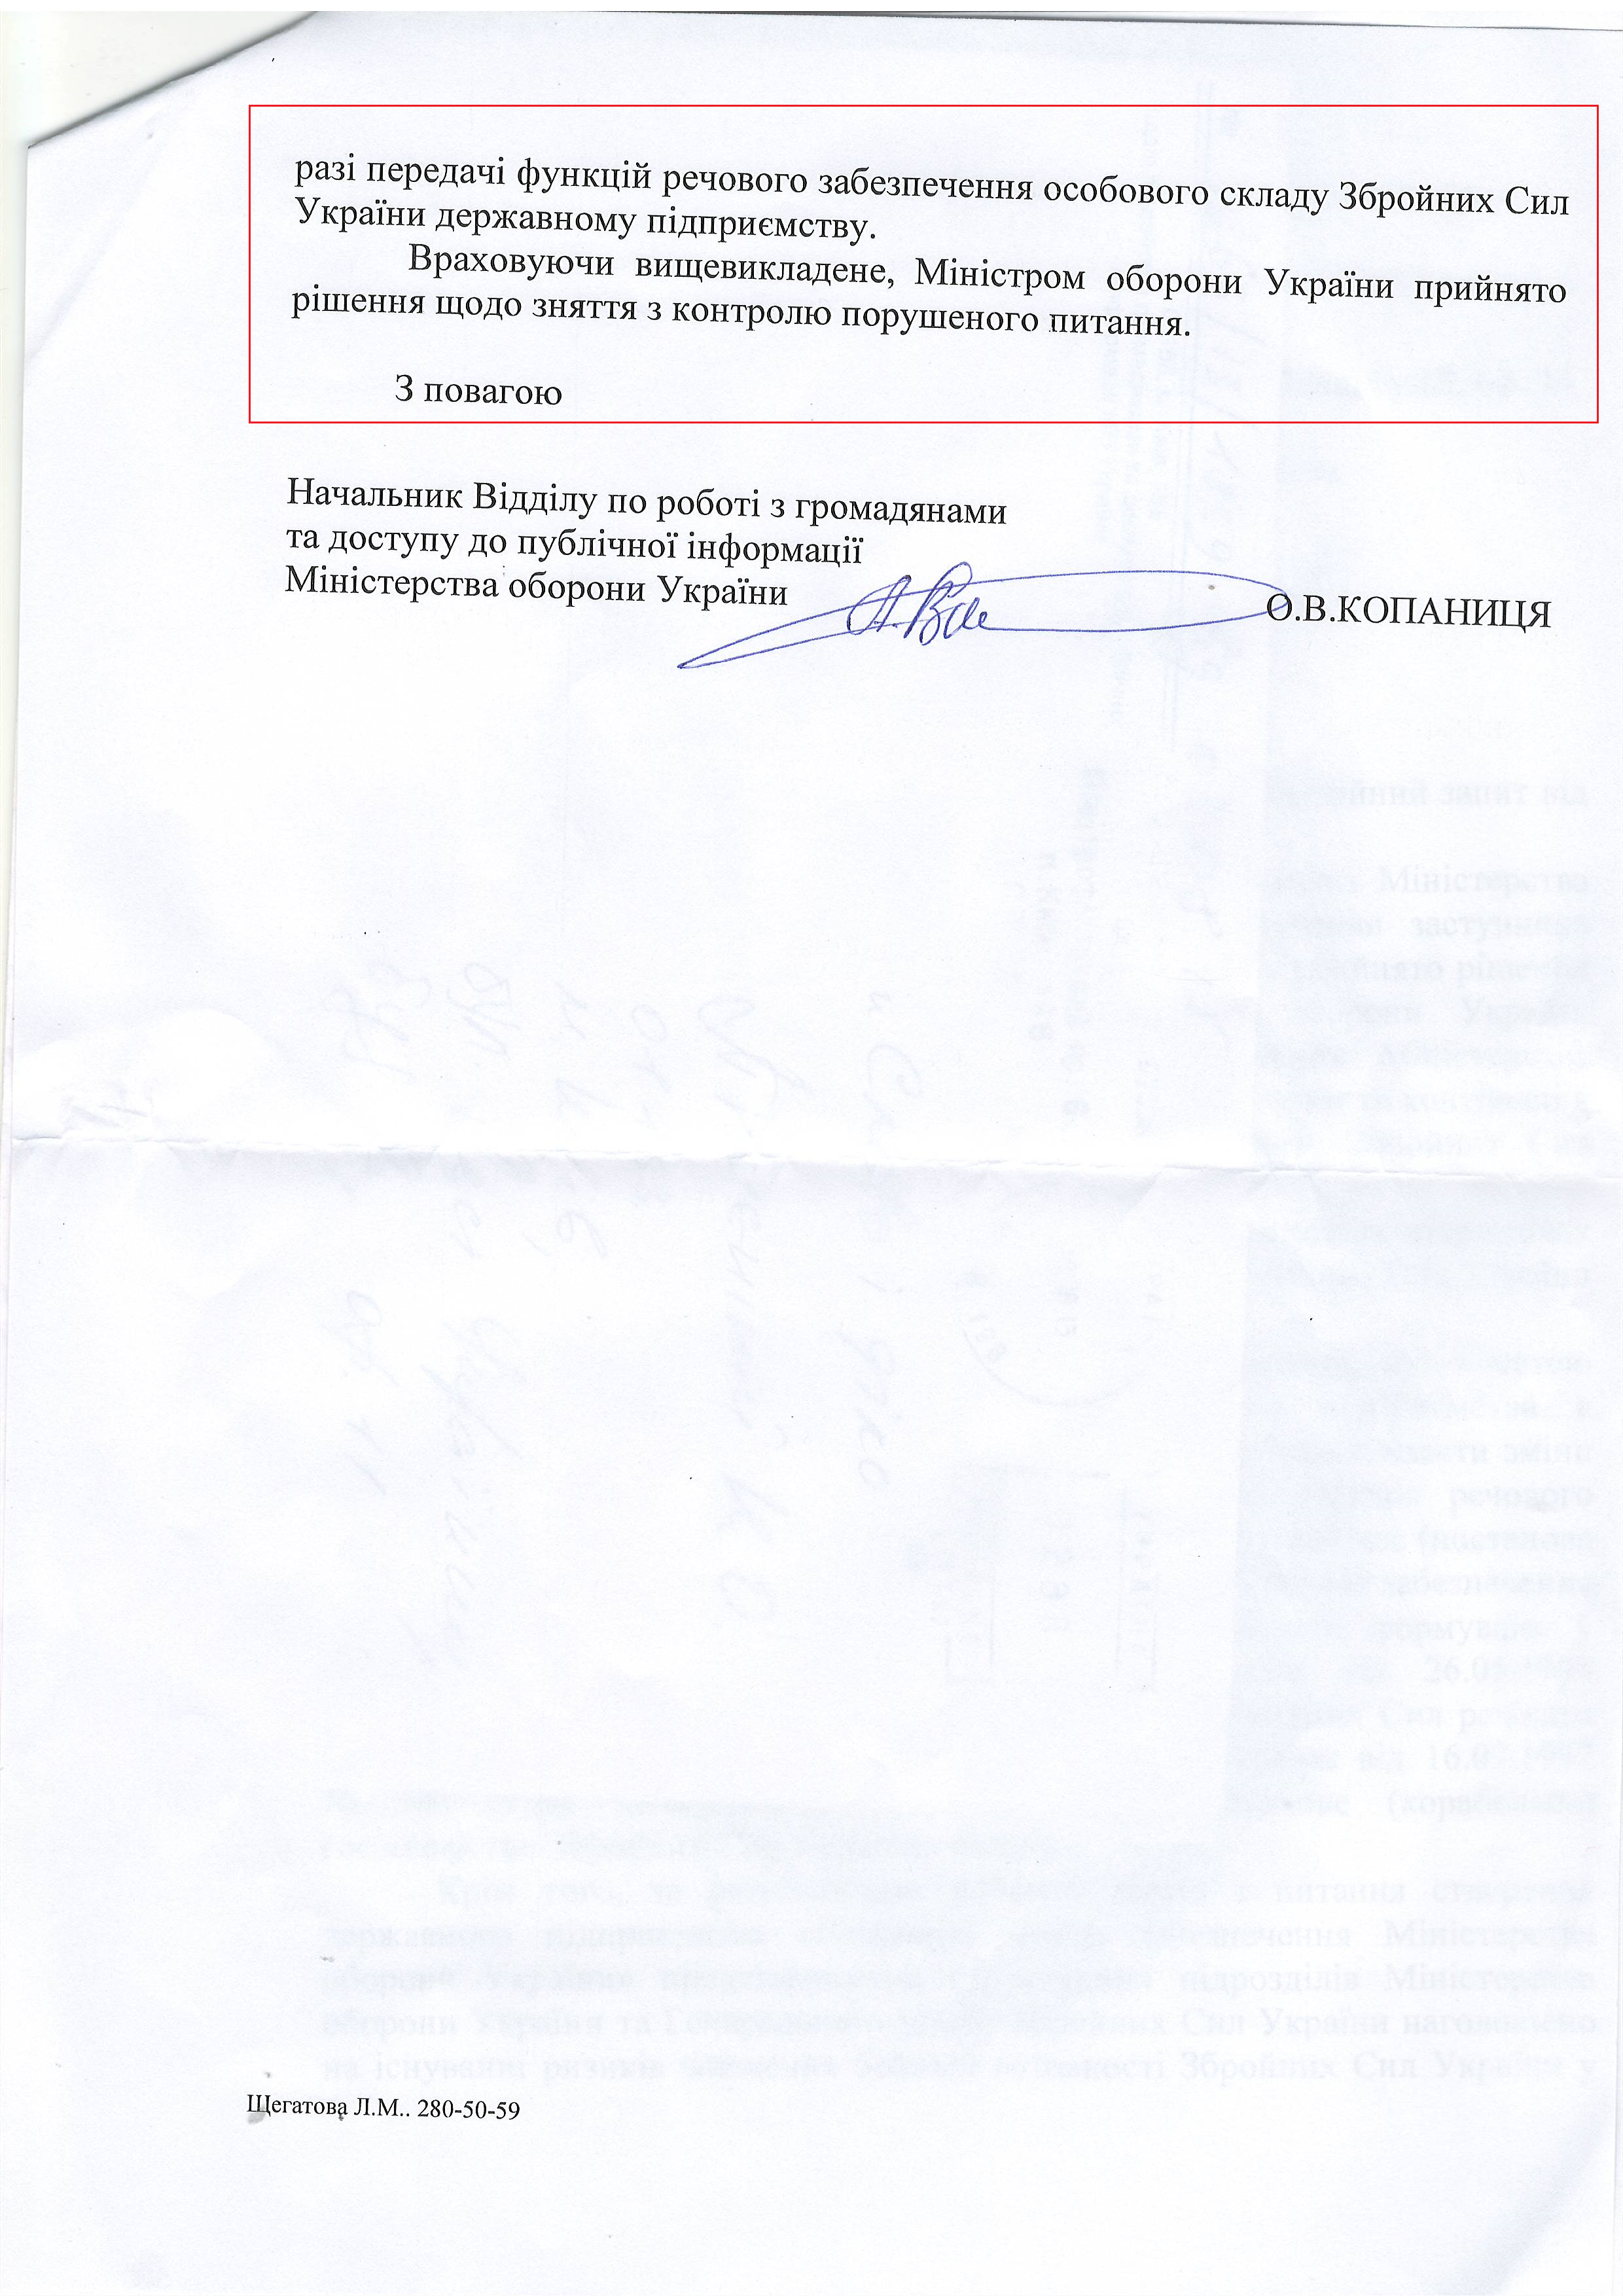 Лист Міністерства оборони України від 3 серопня 2015 року